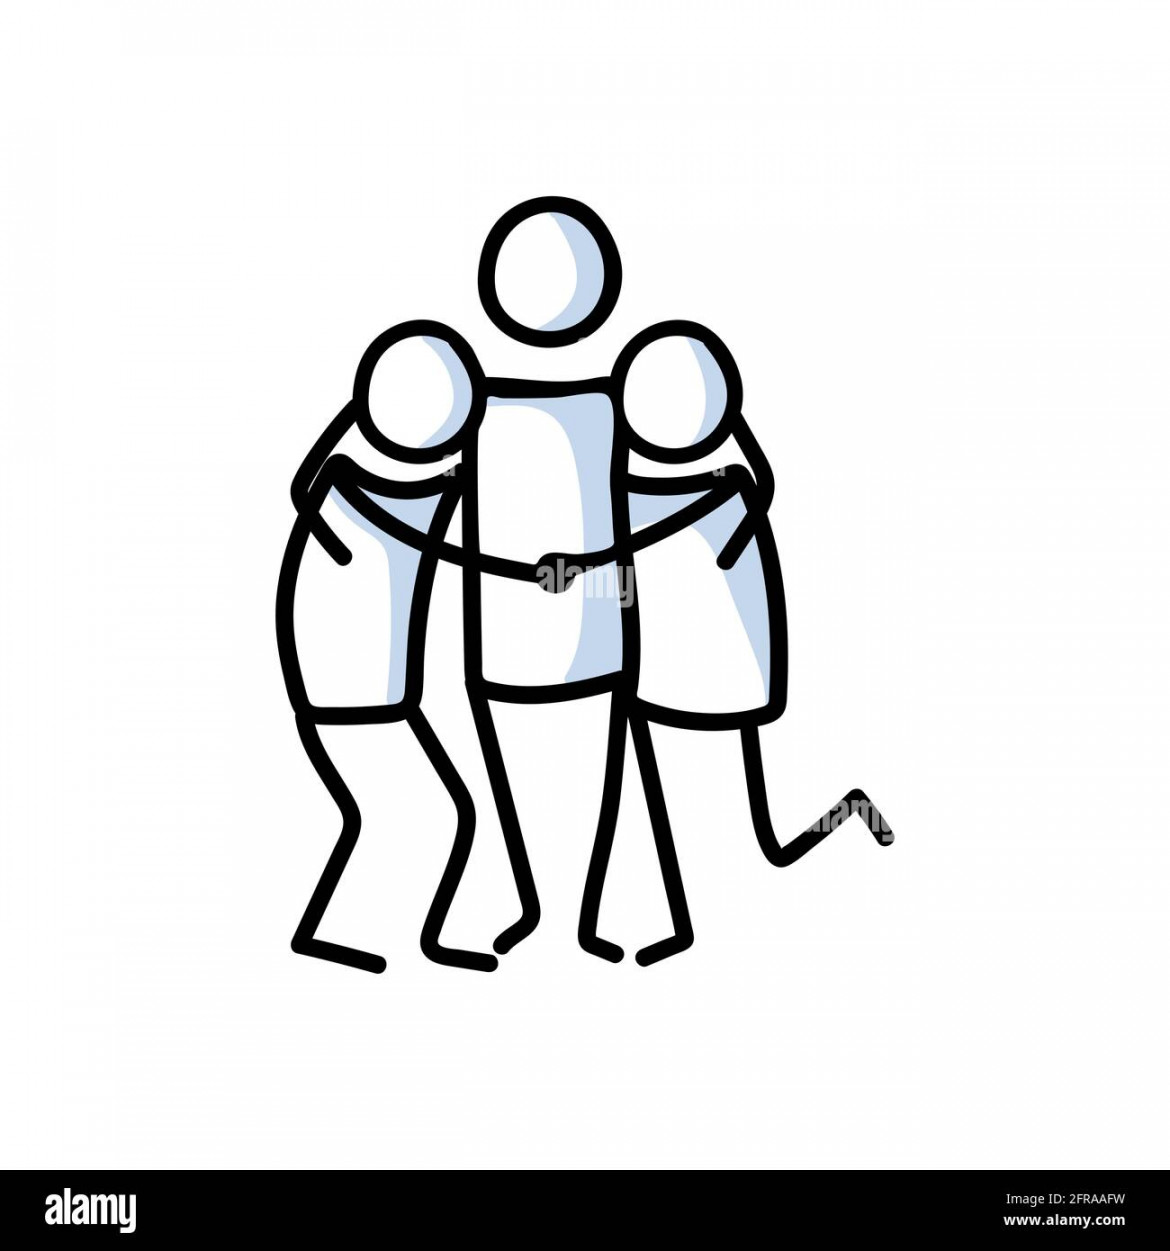 Drawn stick figure of  friends hugging